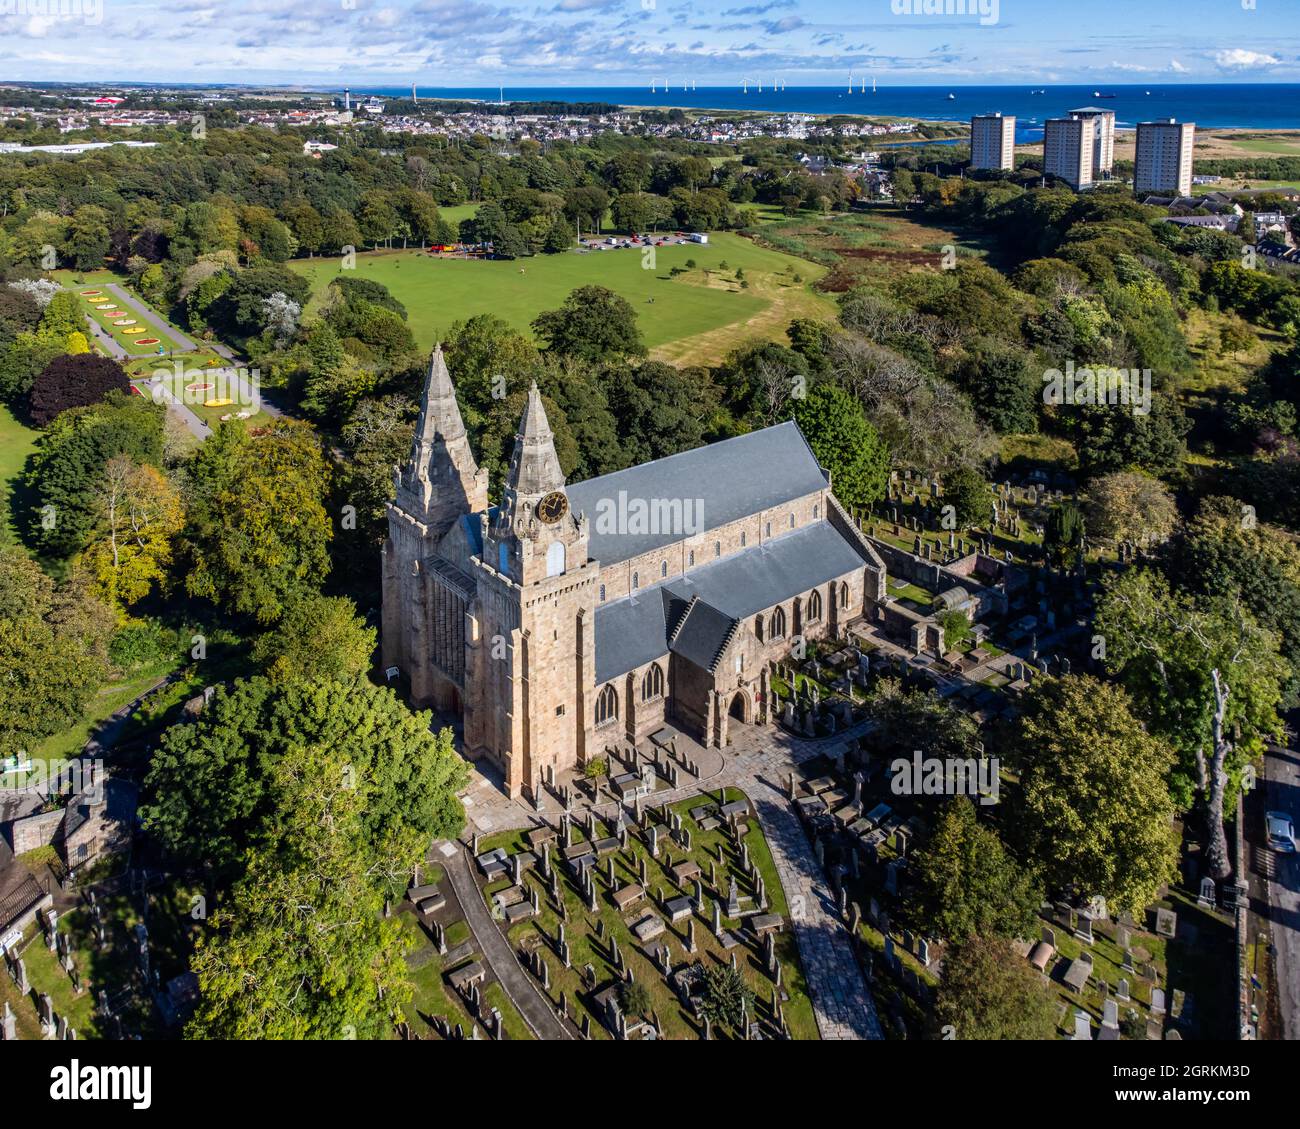 Vue aérienne de la cathédrale St Machar (ou St Machar) dans la ville d'Aberdeen, en Écosse, avec le parc Seaton et les appartements Seaton visibles en arrière-plan Banque D'Images